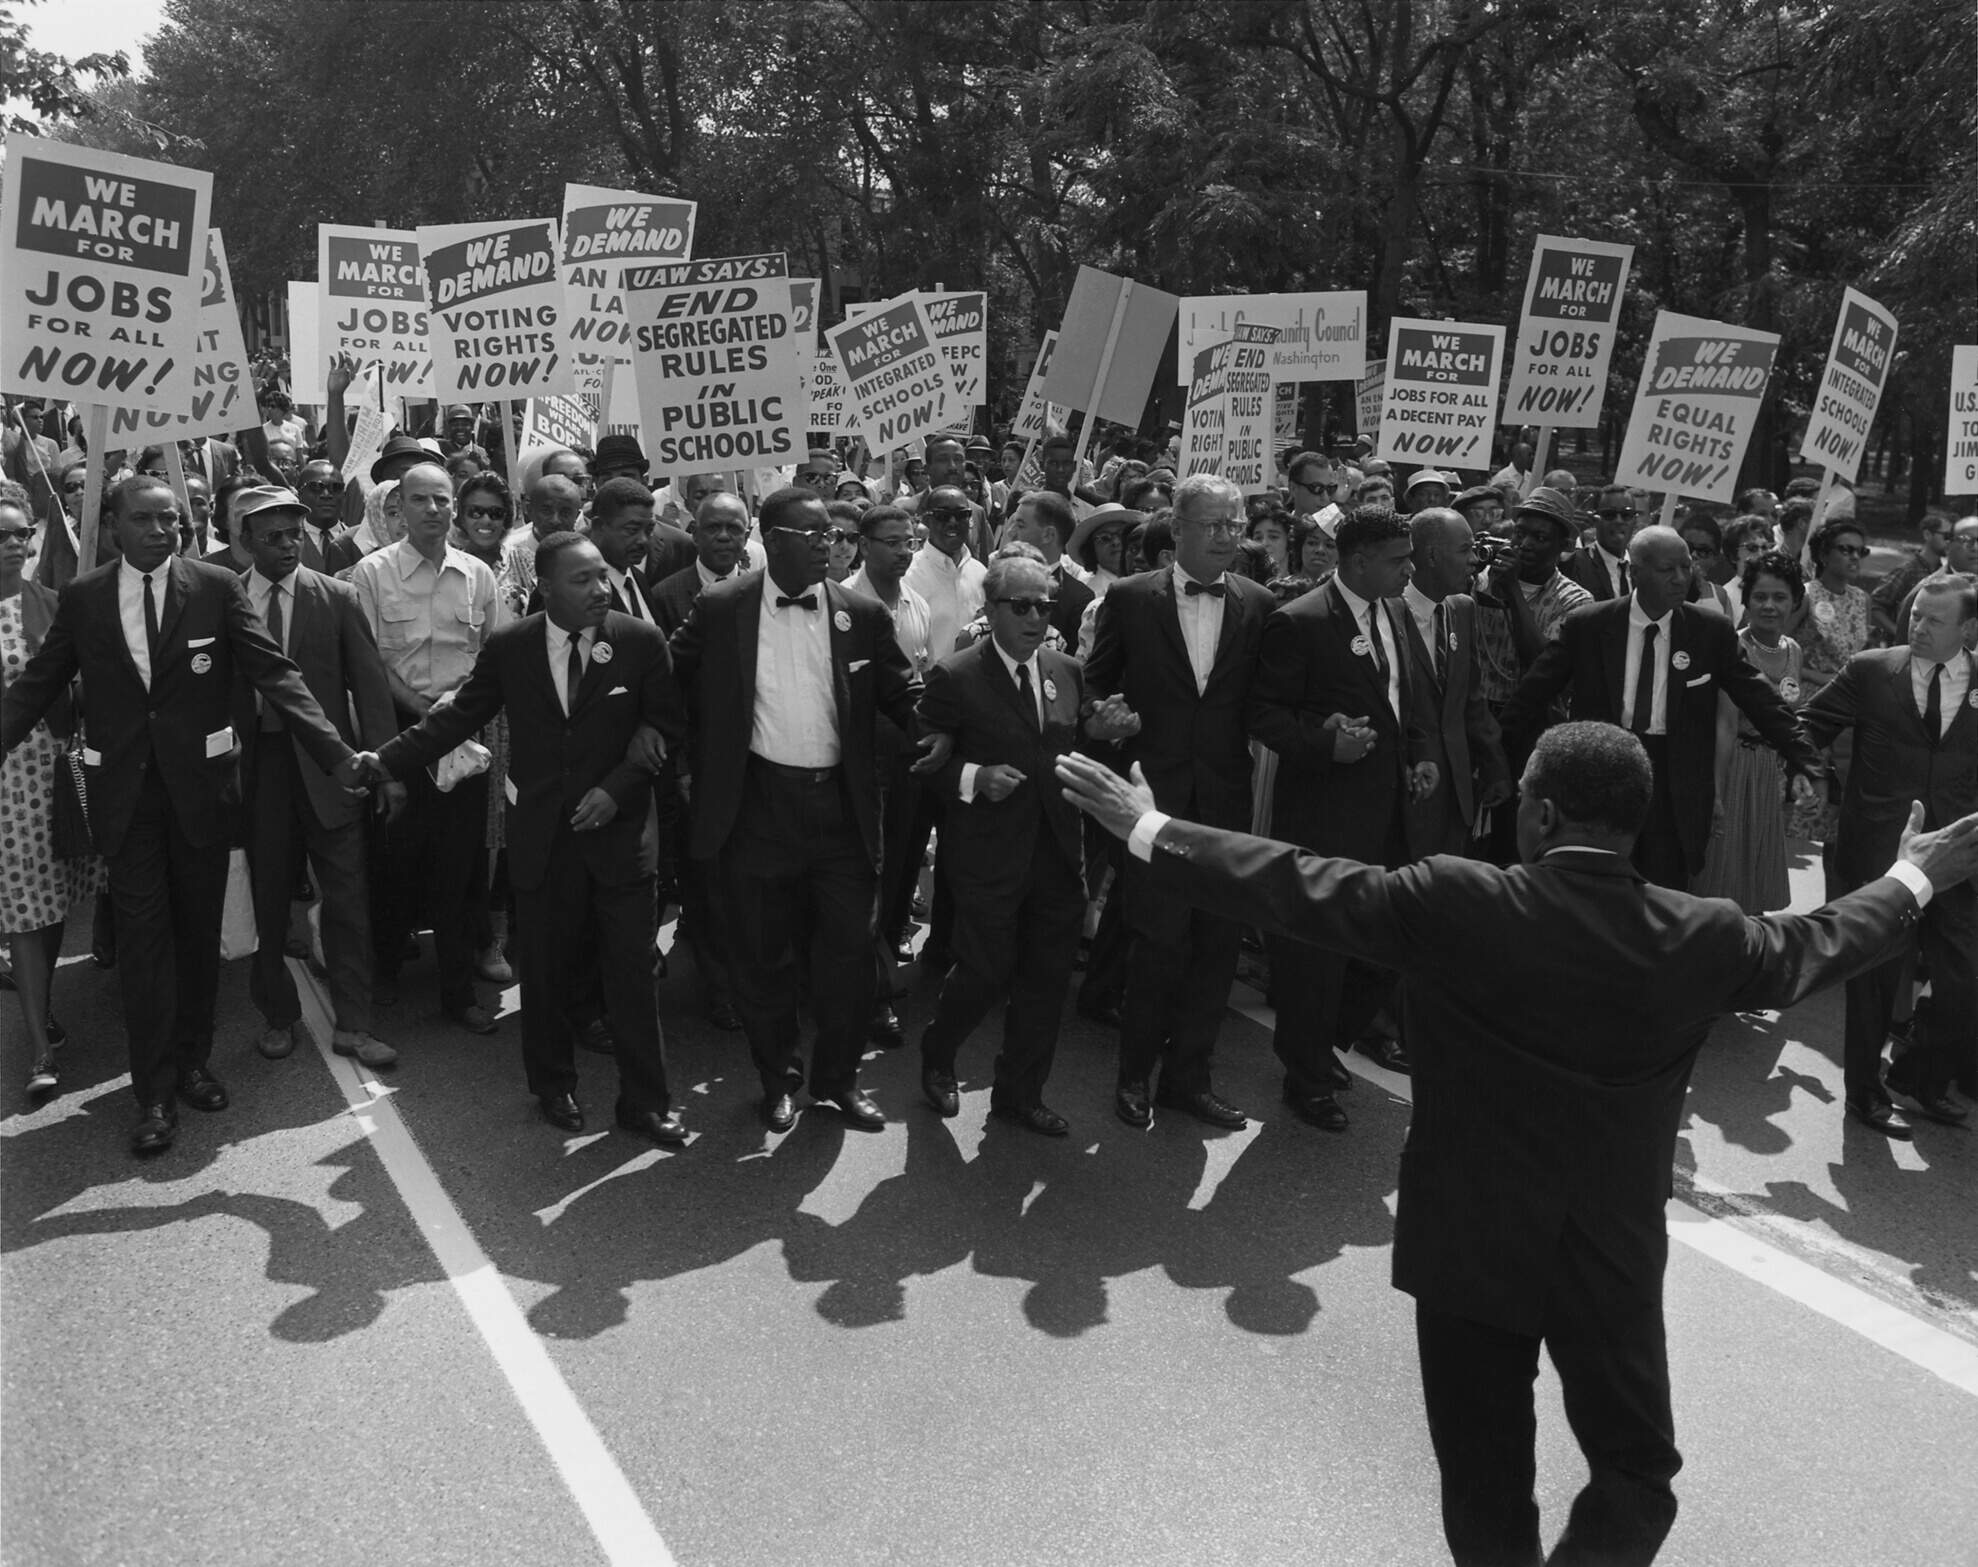 Manifestação durante o Movimento por direitos civis nos Estados Unidos com diversos cartazes pedindo maior inclusão de negroa nas diversas esferas da vida em sociedade. Foi neste período que o termo token começou a ser utilizado.